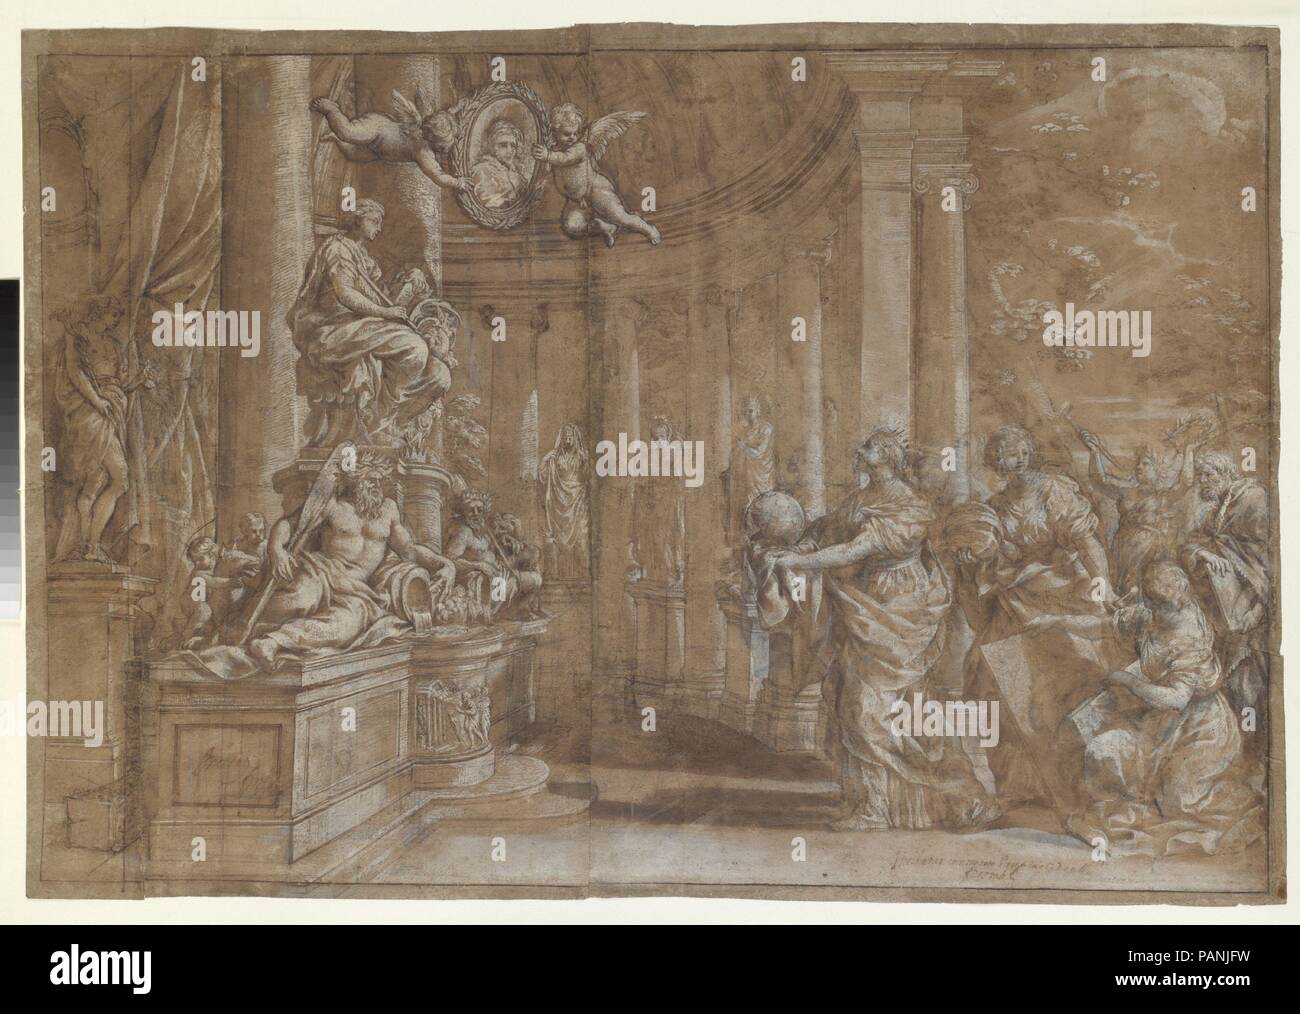 Allegoria in onore del cardinale Antonio Barberini il Giovane (1607-1671) (Design per un incisione). Artista: Pietro da Cortona (Pietro Berrettini) (italiano, Cortona 1596-1669 Roma). Dimensioni: 20-1/2 x 30-3/8 in. (52,0 x 77,2 cm). Data: 1596-1669. La finitura di elevata di questo disegno, come pure le due annotazioni inizio 'Incidat ...", nella mano di un censore ecclesiastico, indicano che fu voluto da Pietro da Cortona per la sua intagliatore - e infatti la progettazione è stata riprodotta nelle stesse dimensioni ma in senso inverso dall'incisore olandese Theodor Matham (1589-1676), un contemporaneo delle arti Foto Stock